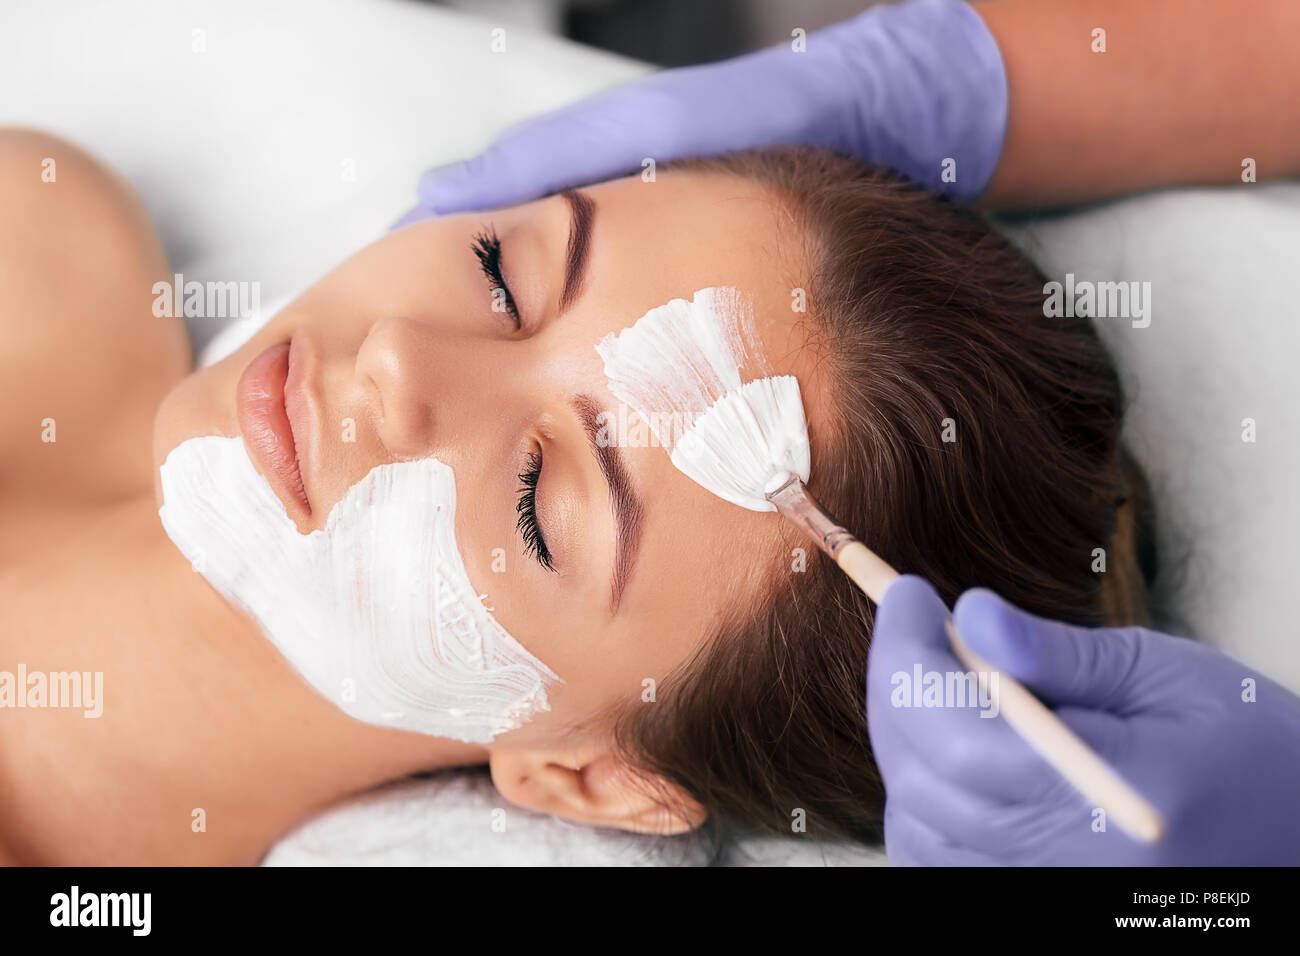 Beauty facial salon treeatments Stock Photo